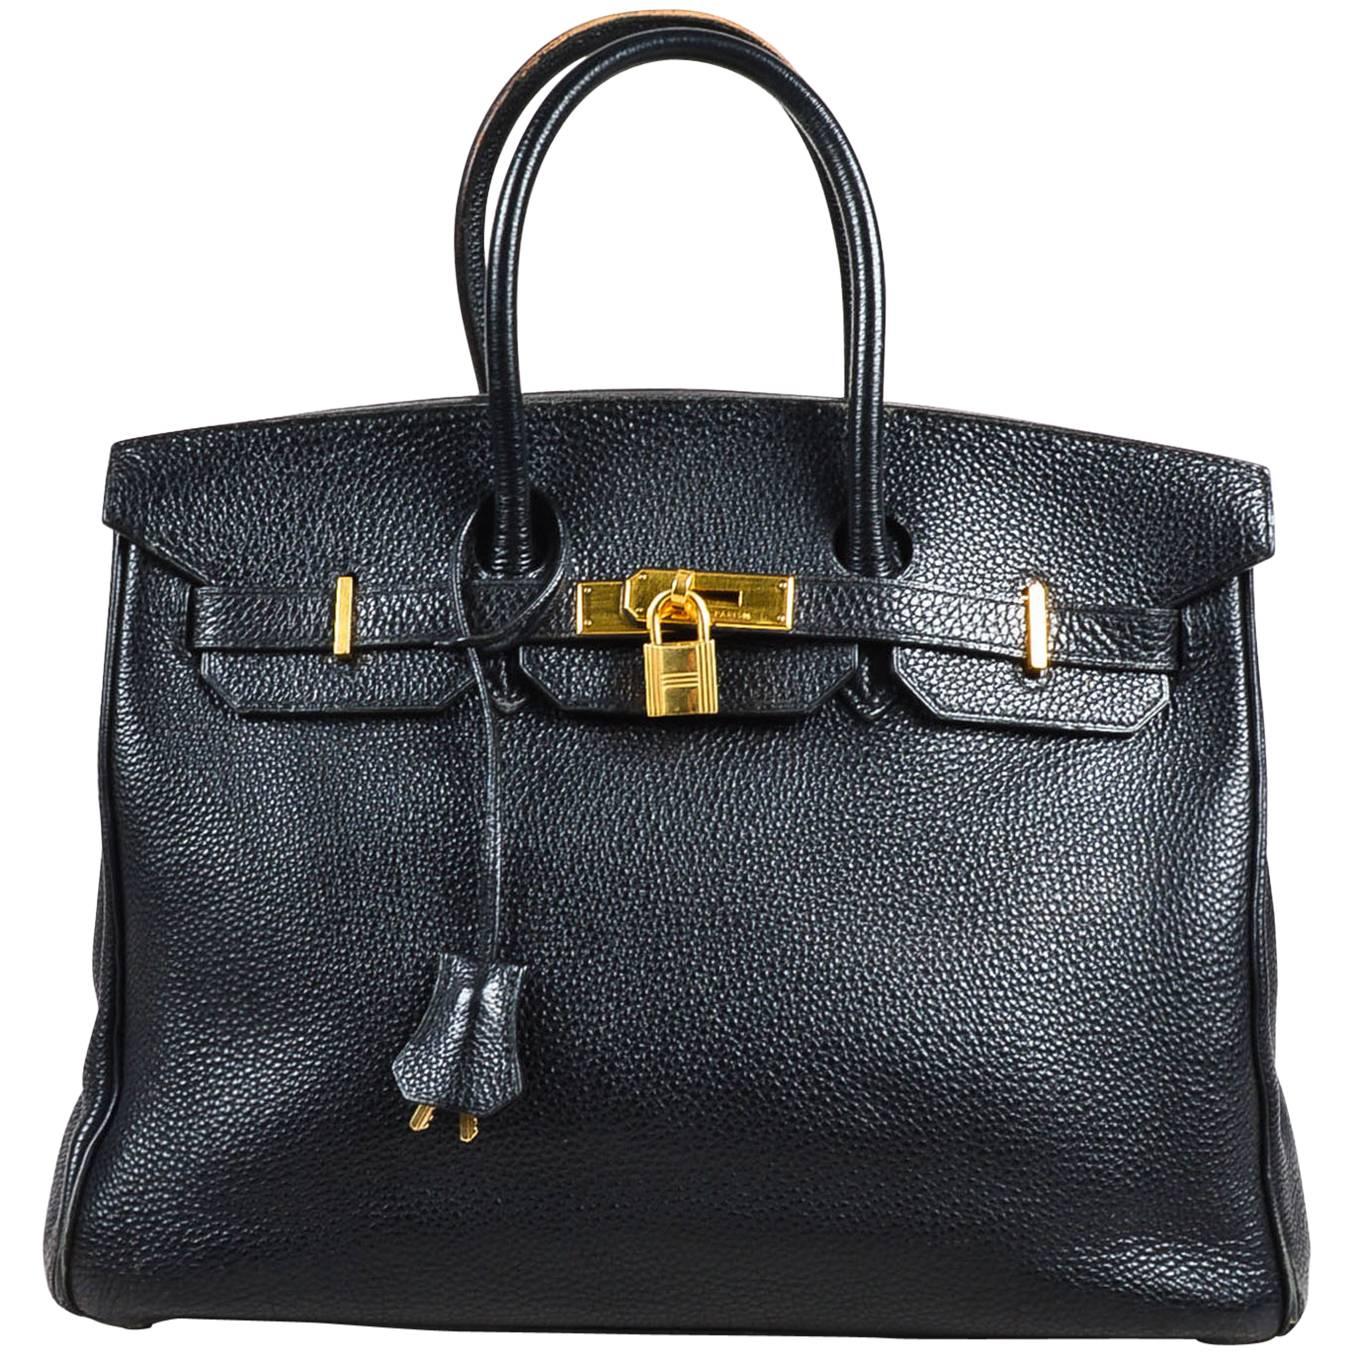 Hermes Black Togo Leather Gold Plated Hardware "Birkin" 35 cm Bag For Sale